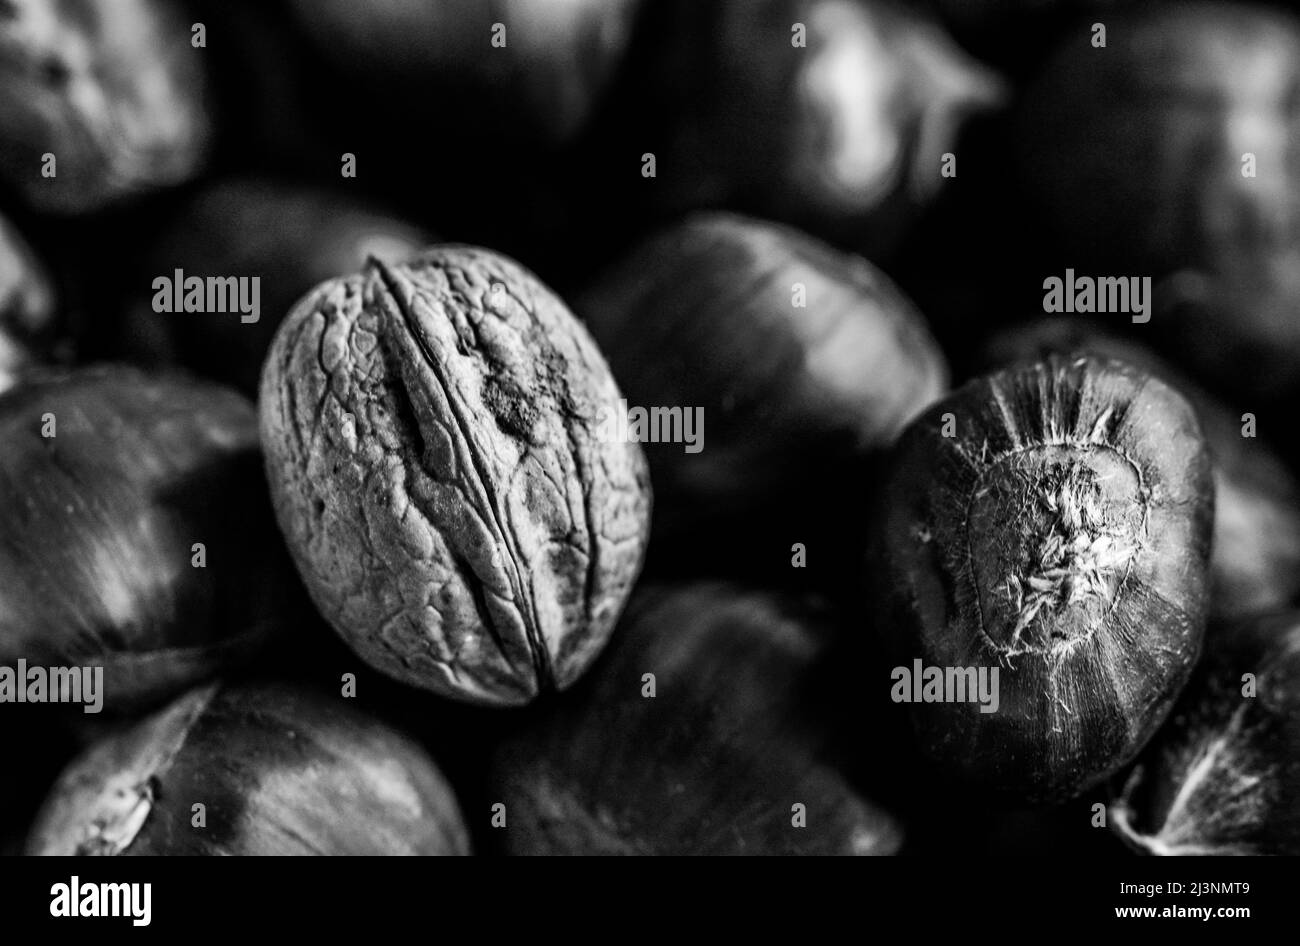 Beautiful close-up of a walnut Stock Photo